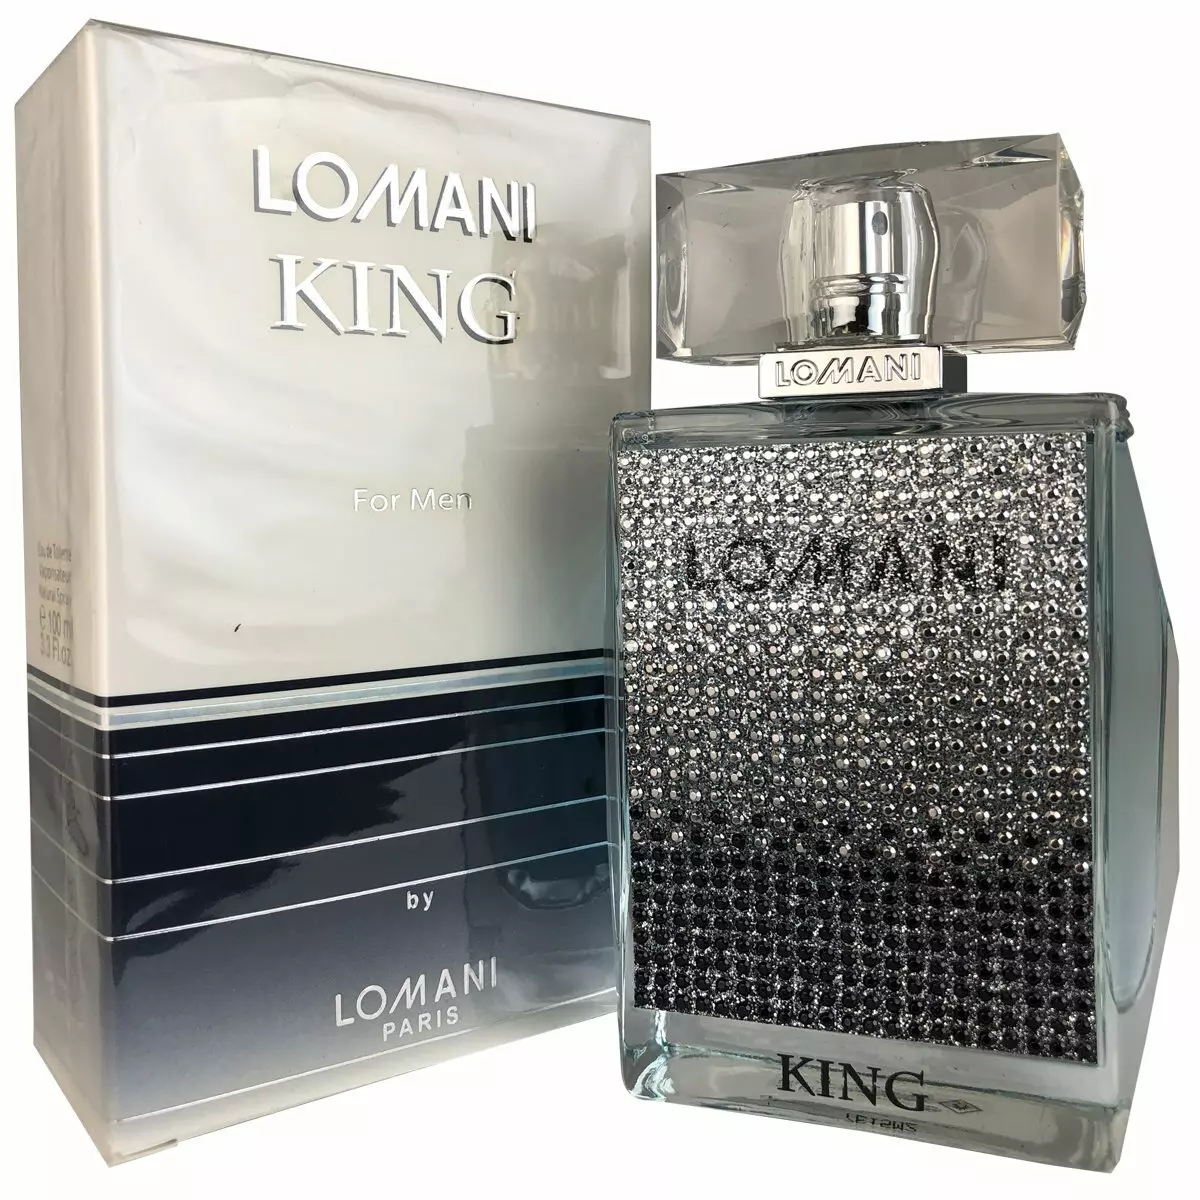 Parfémy Lomani: pánské a dámské toaletní voda, elitida, nejlepší a slečna lani, tipy na výběr parfémy 25168_3